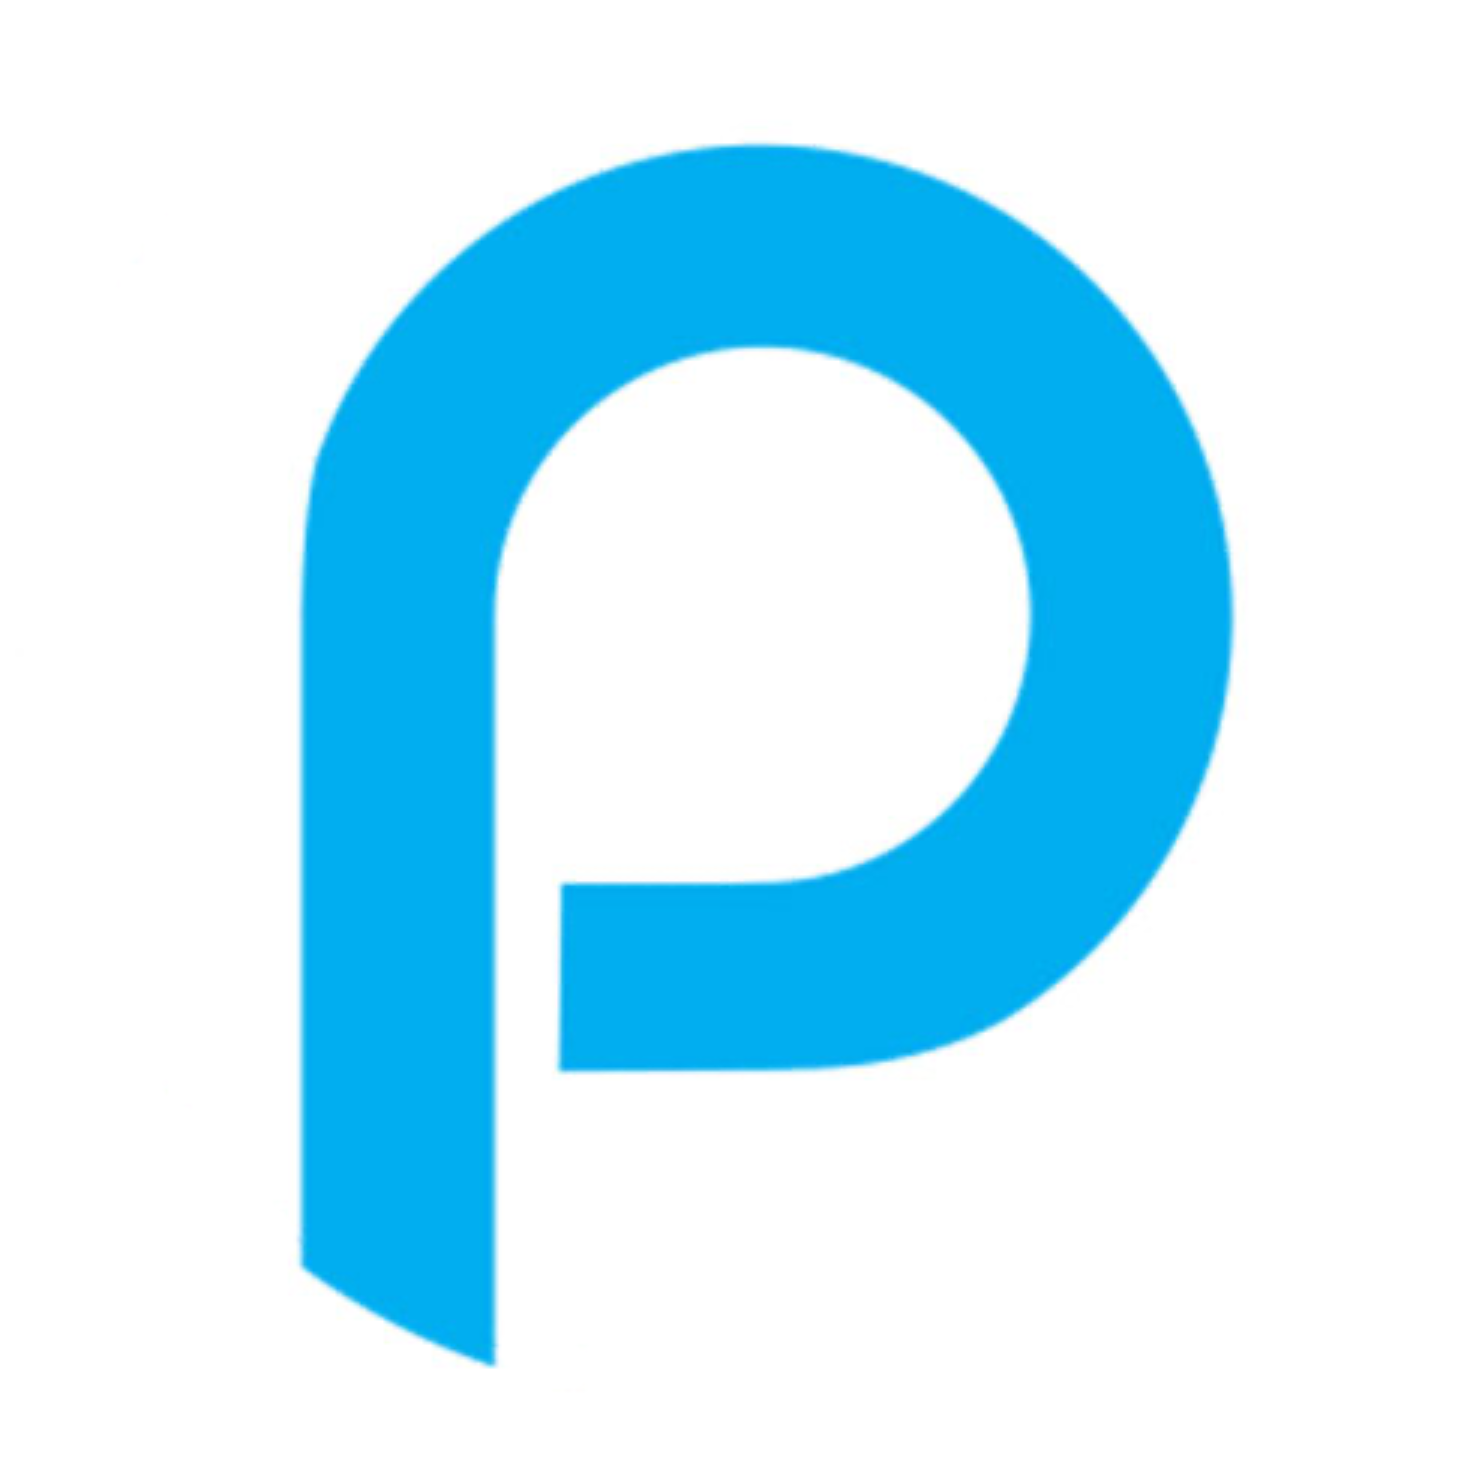 Company logo of Pharmapacks